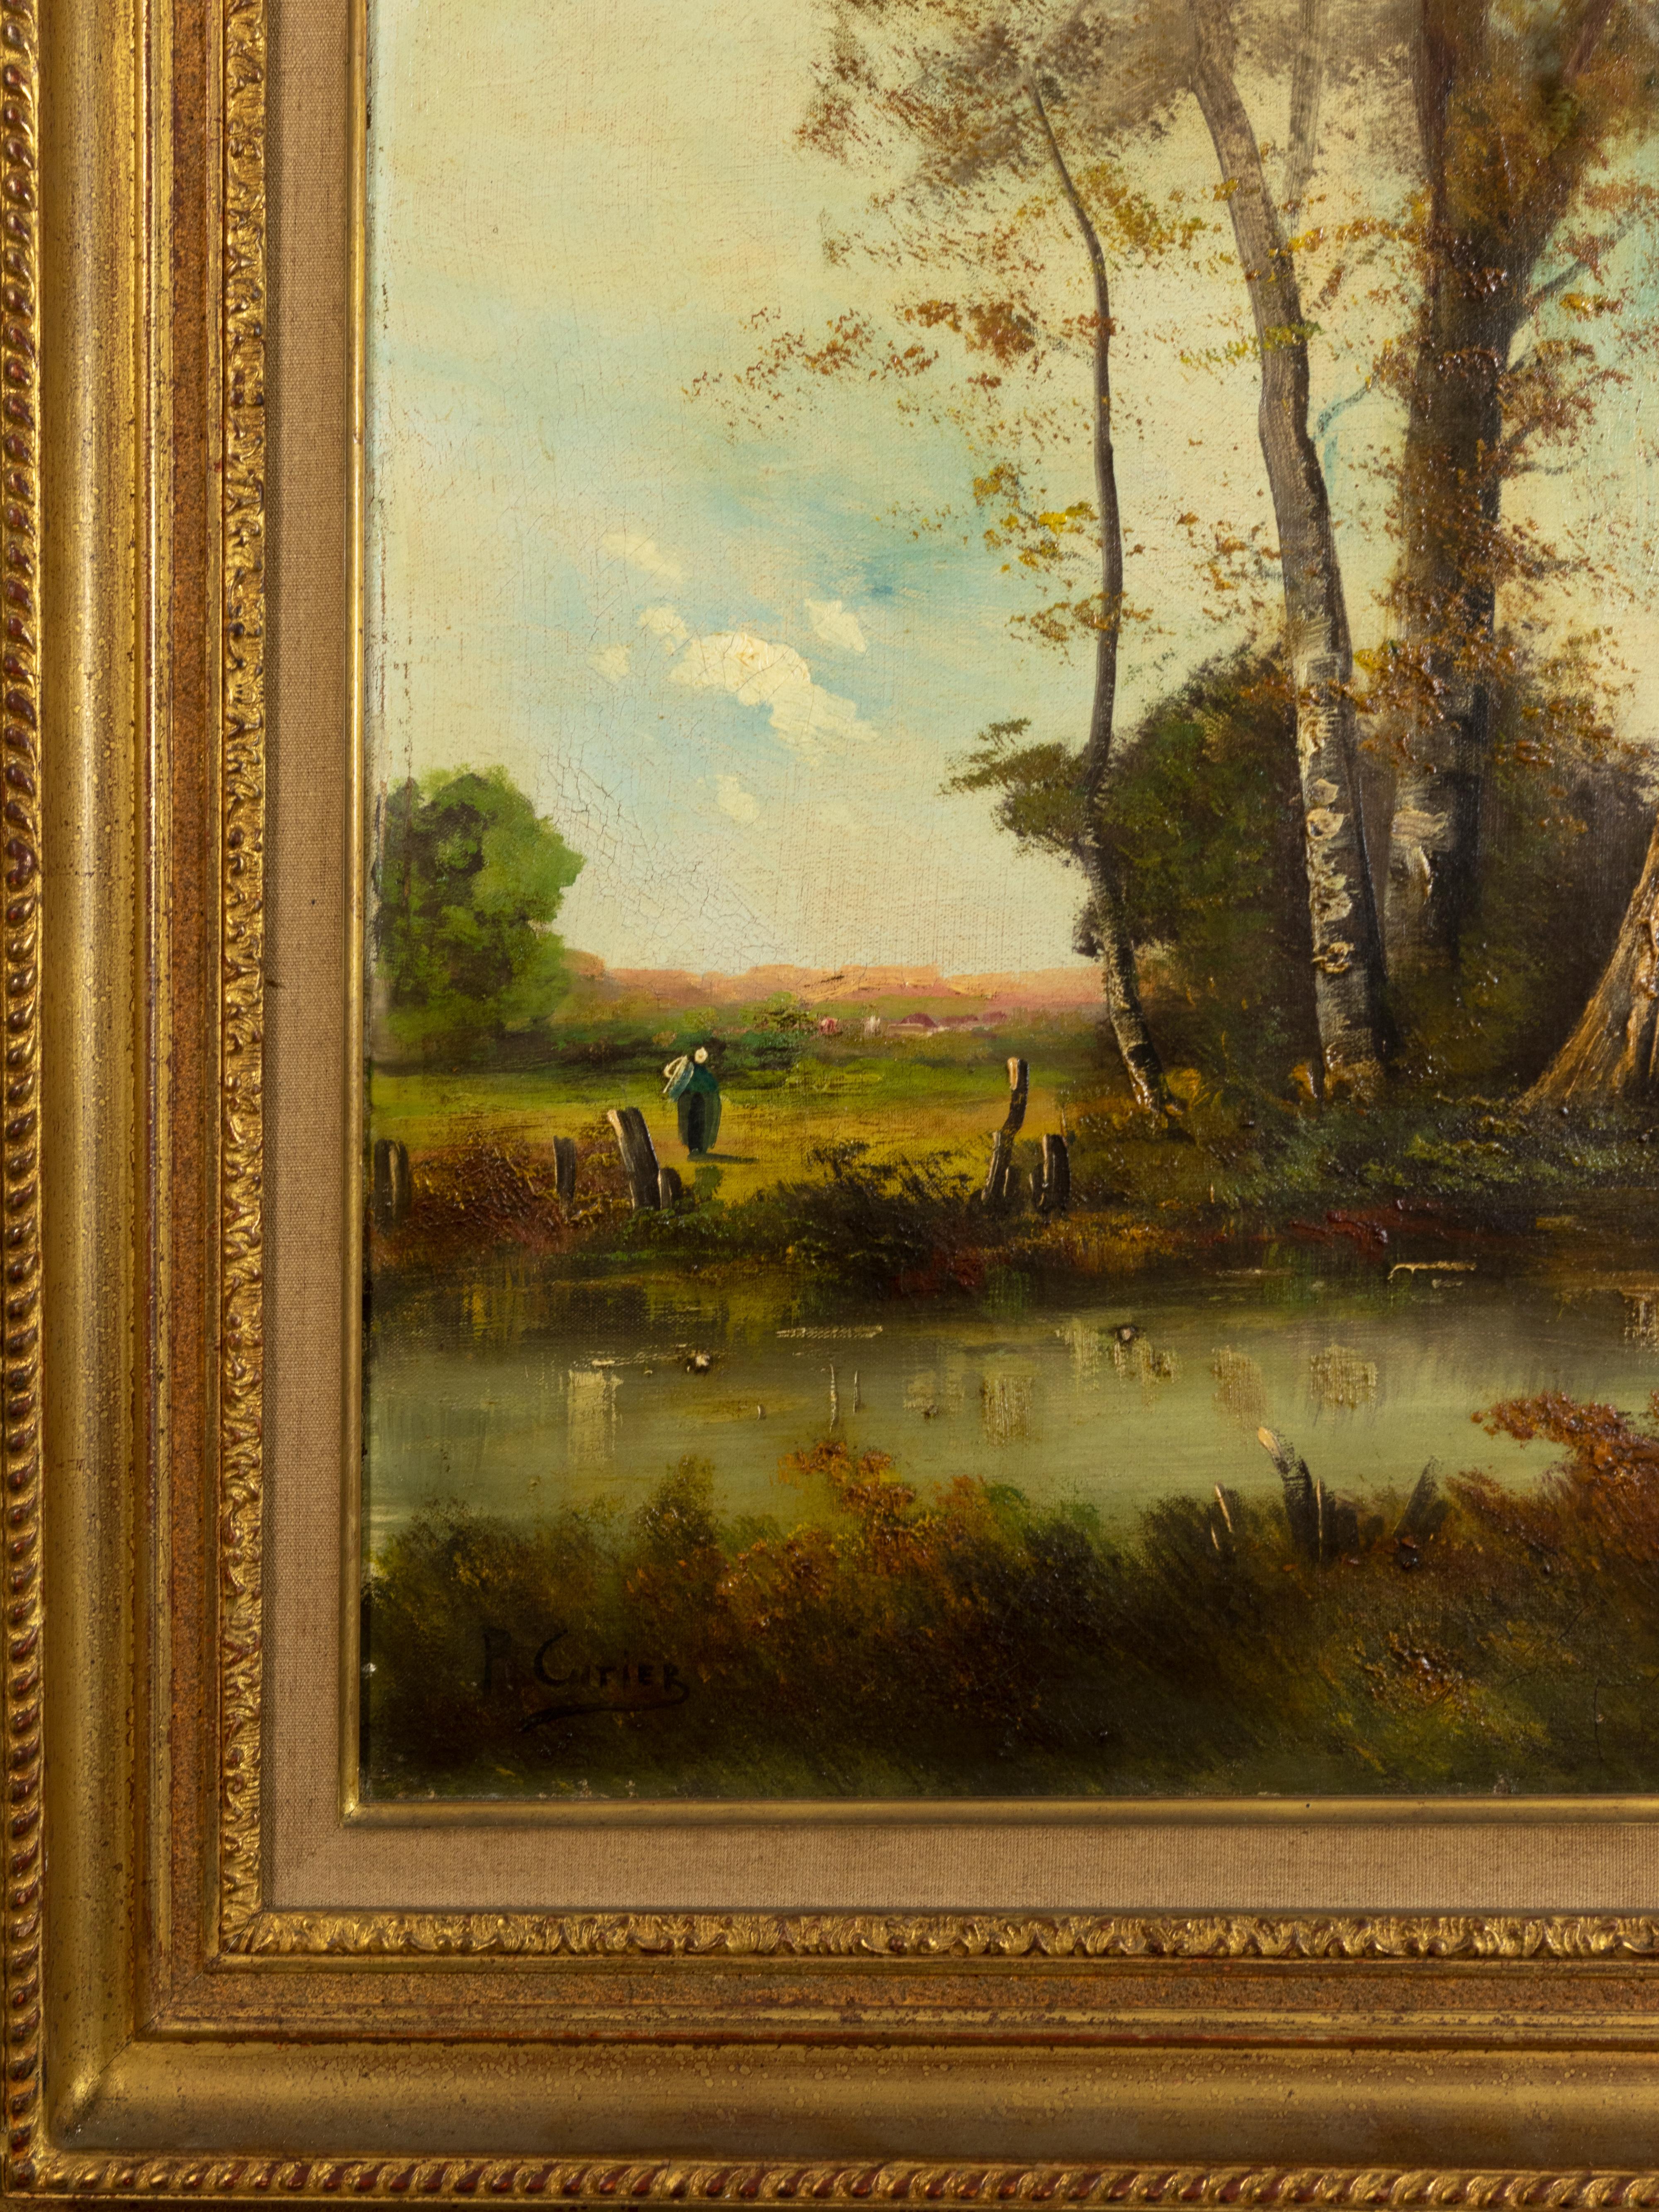 Peinture française d'un paysage bucolique avec une rivière et un homme au loin, signée 